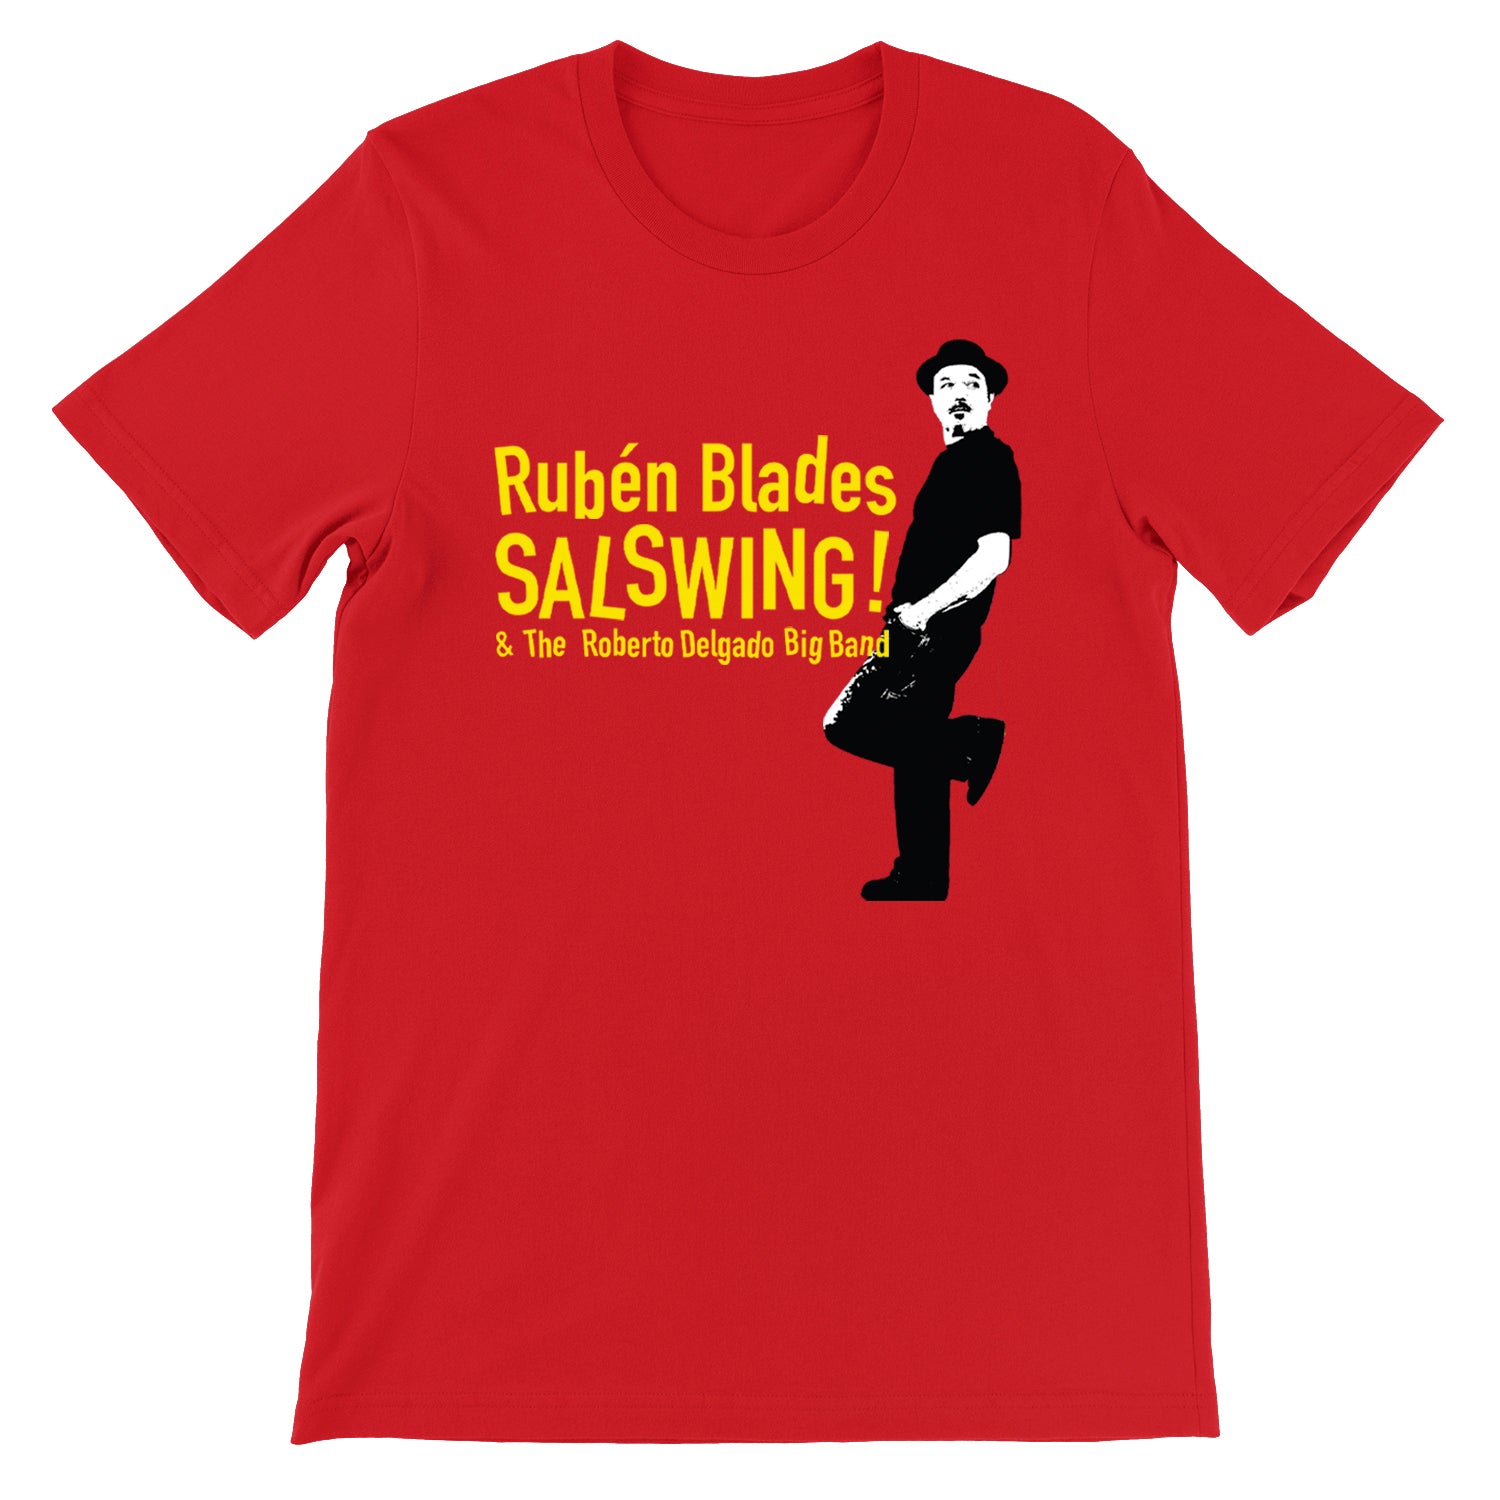 Rubén Blades & The Roberto Delgado Big Band SALSWING! Tour T-Shirt